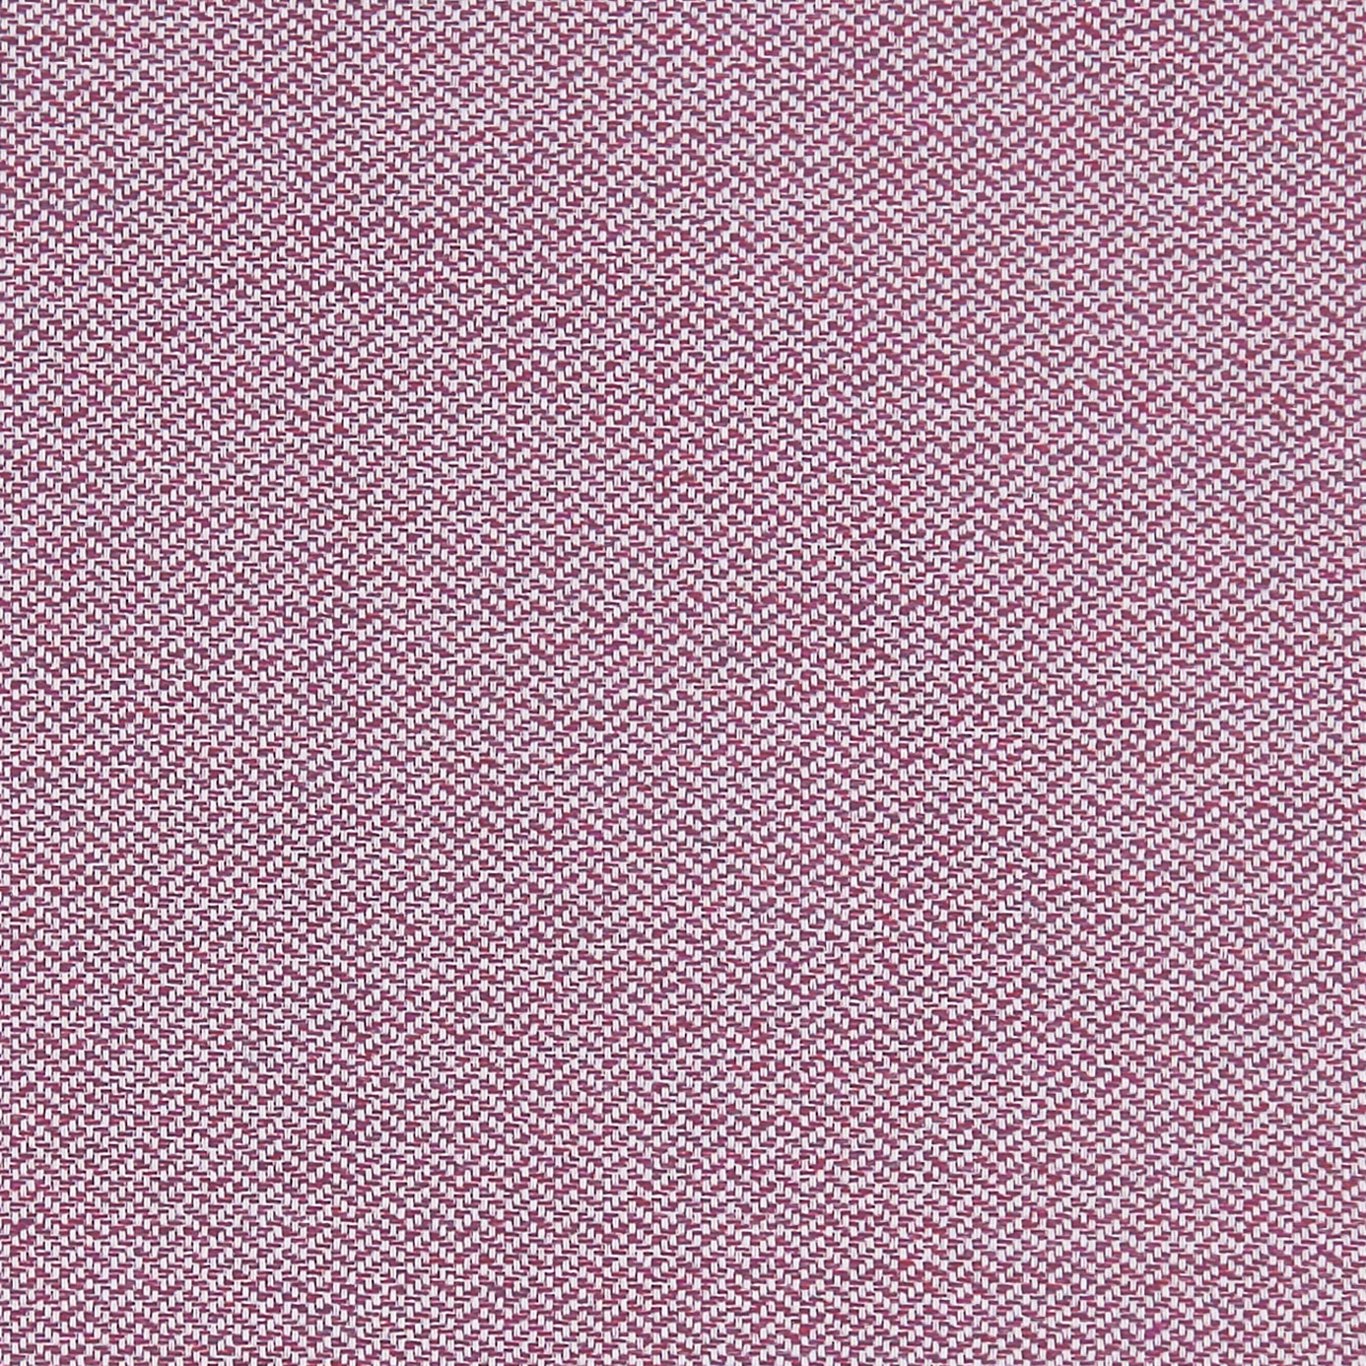 Claro Amethyst Fabric by CNC